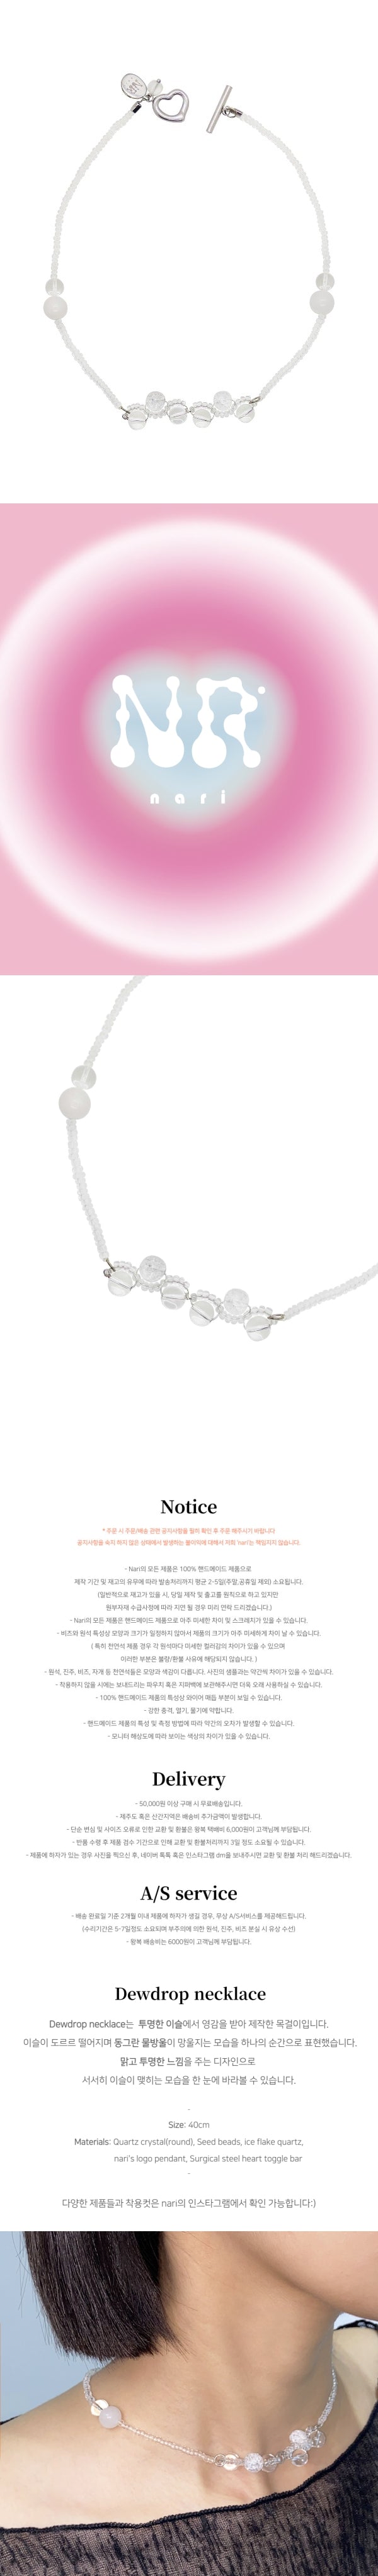 Dewdrop necklace